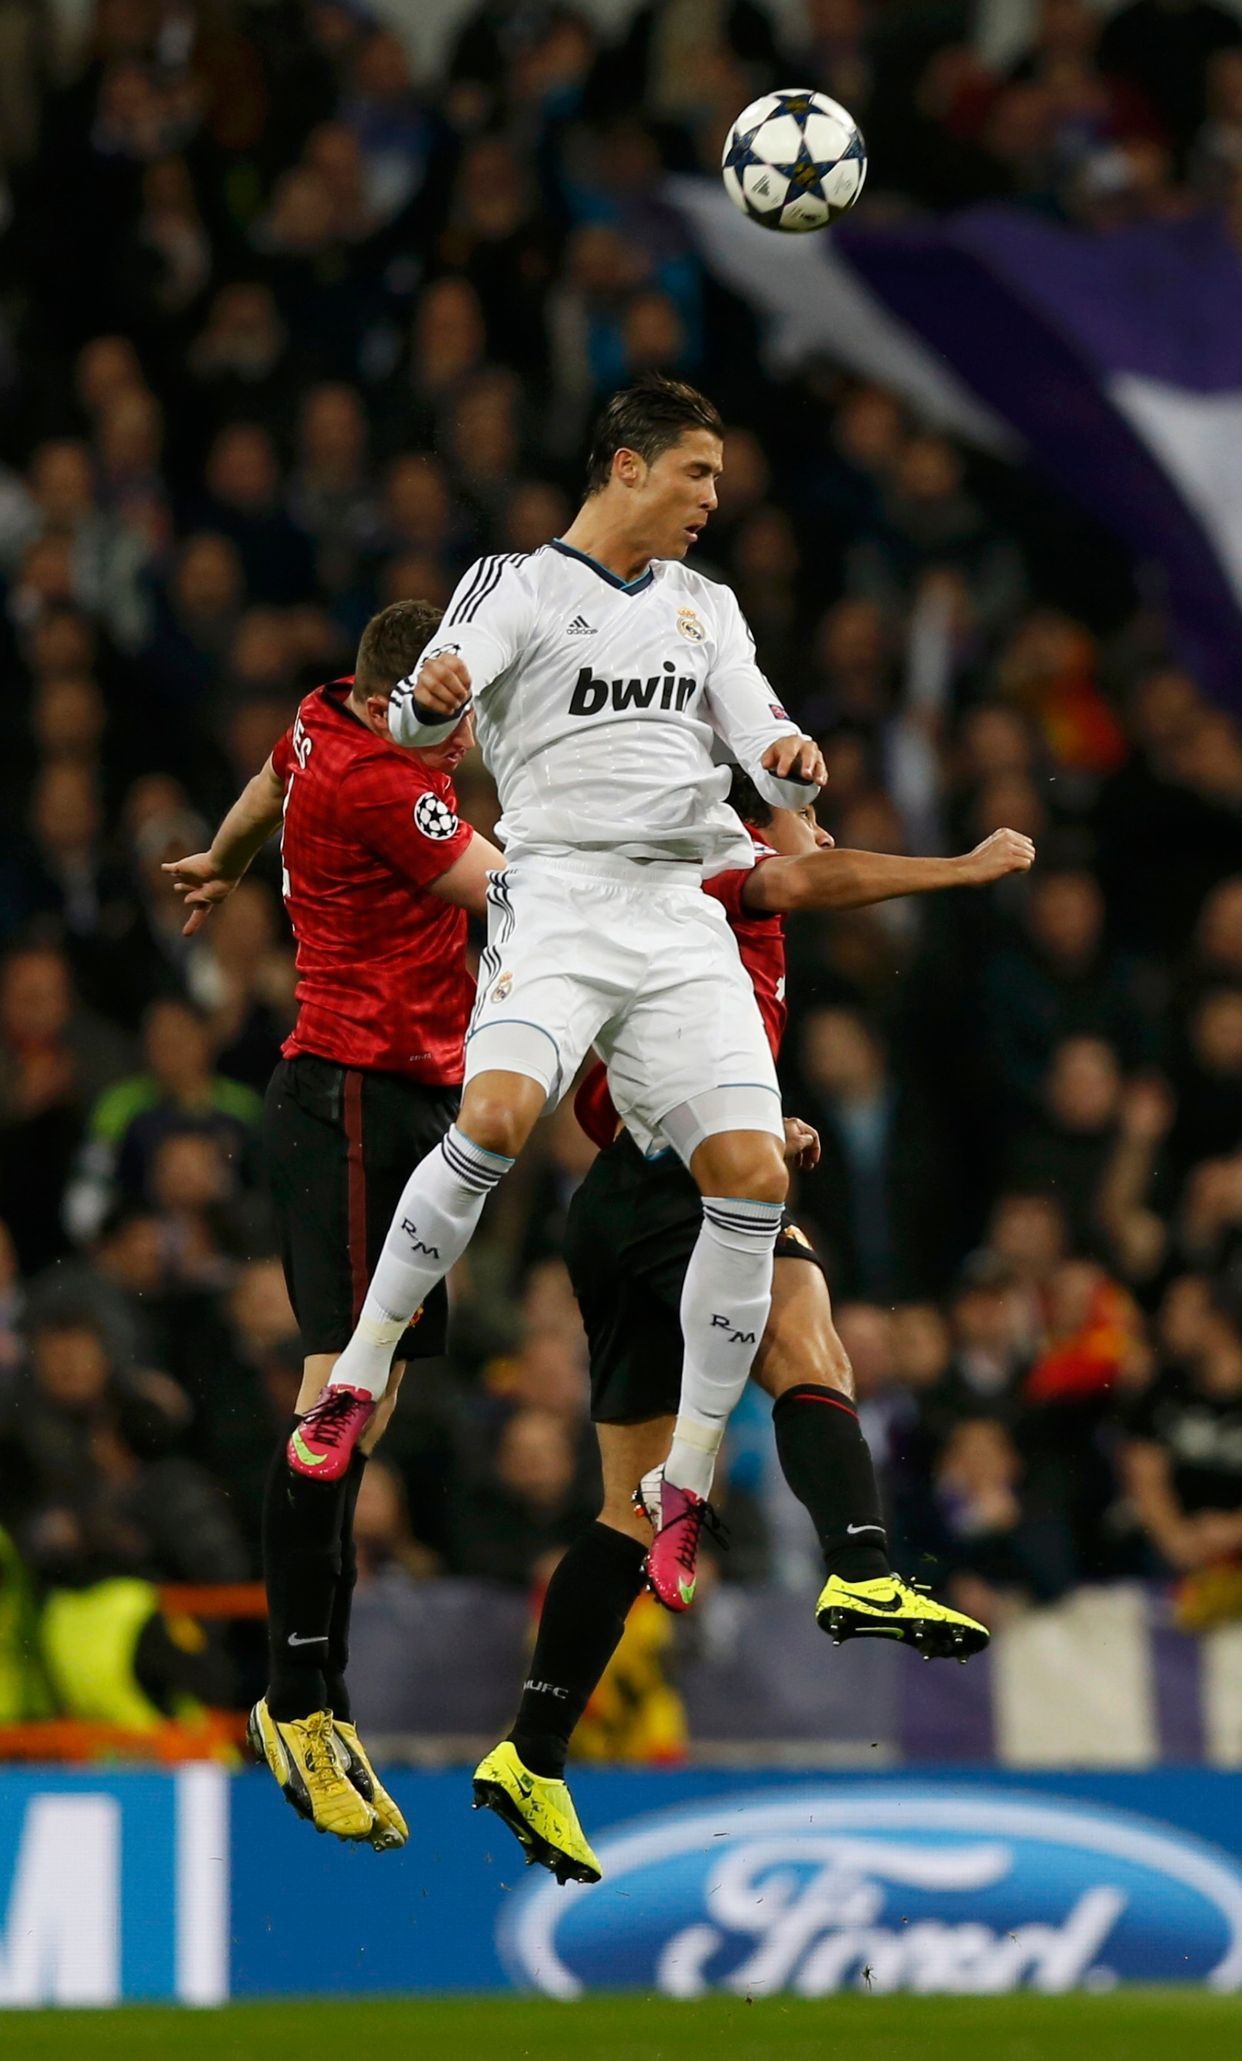 Liga mistrů: Real Madrid - Manchester United:  Rafael da Silva (v bílém) - Phil Jones